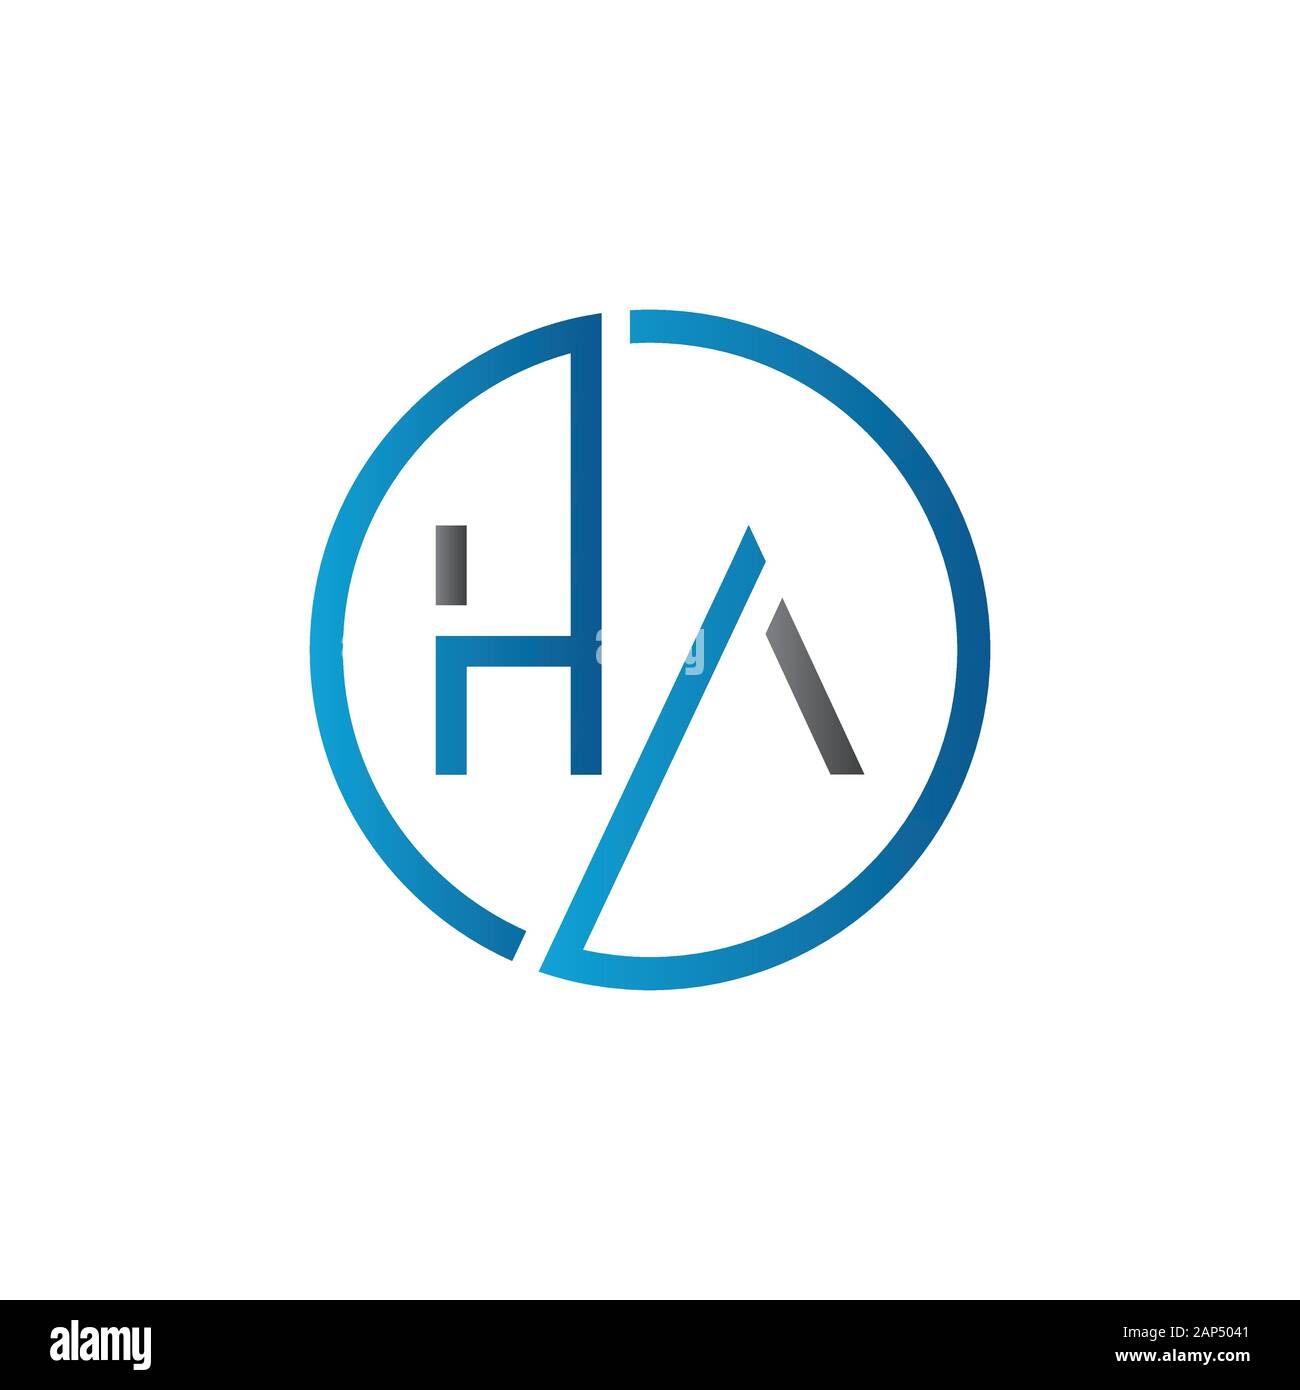 letter HA Logo Design Vector Template. Initial Linked Letter HA Vector Illustration Stock Vector